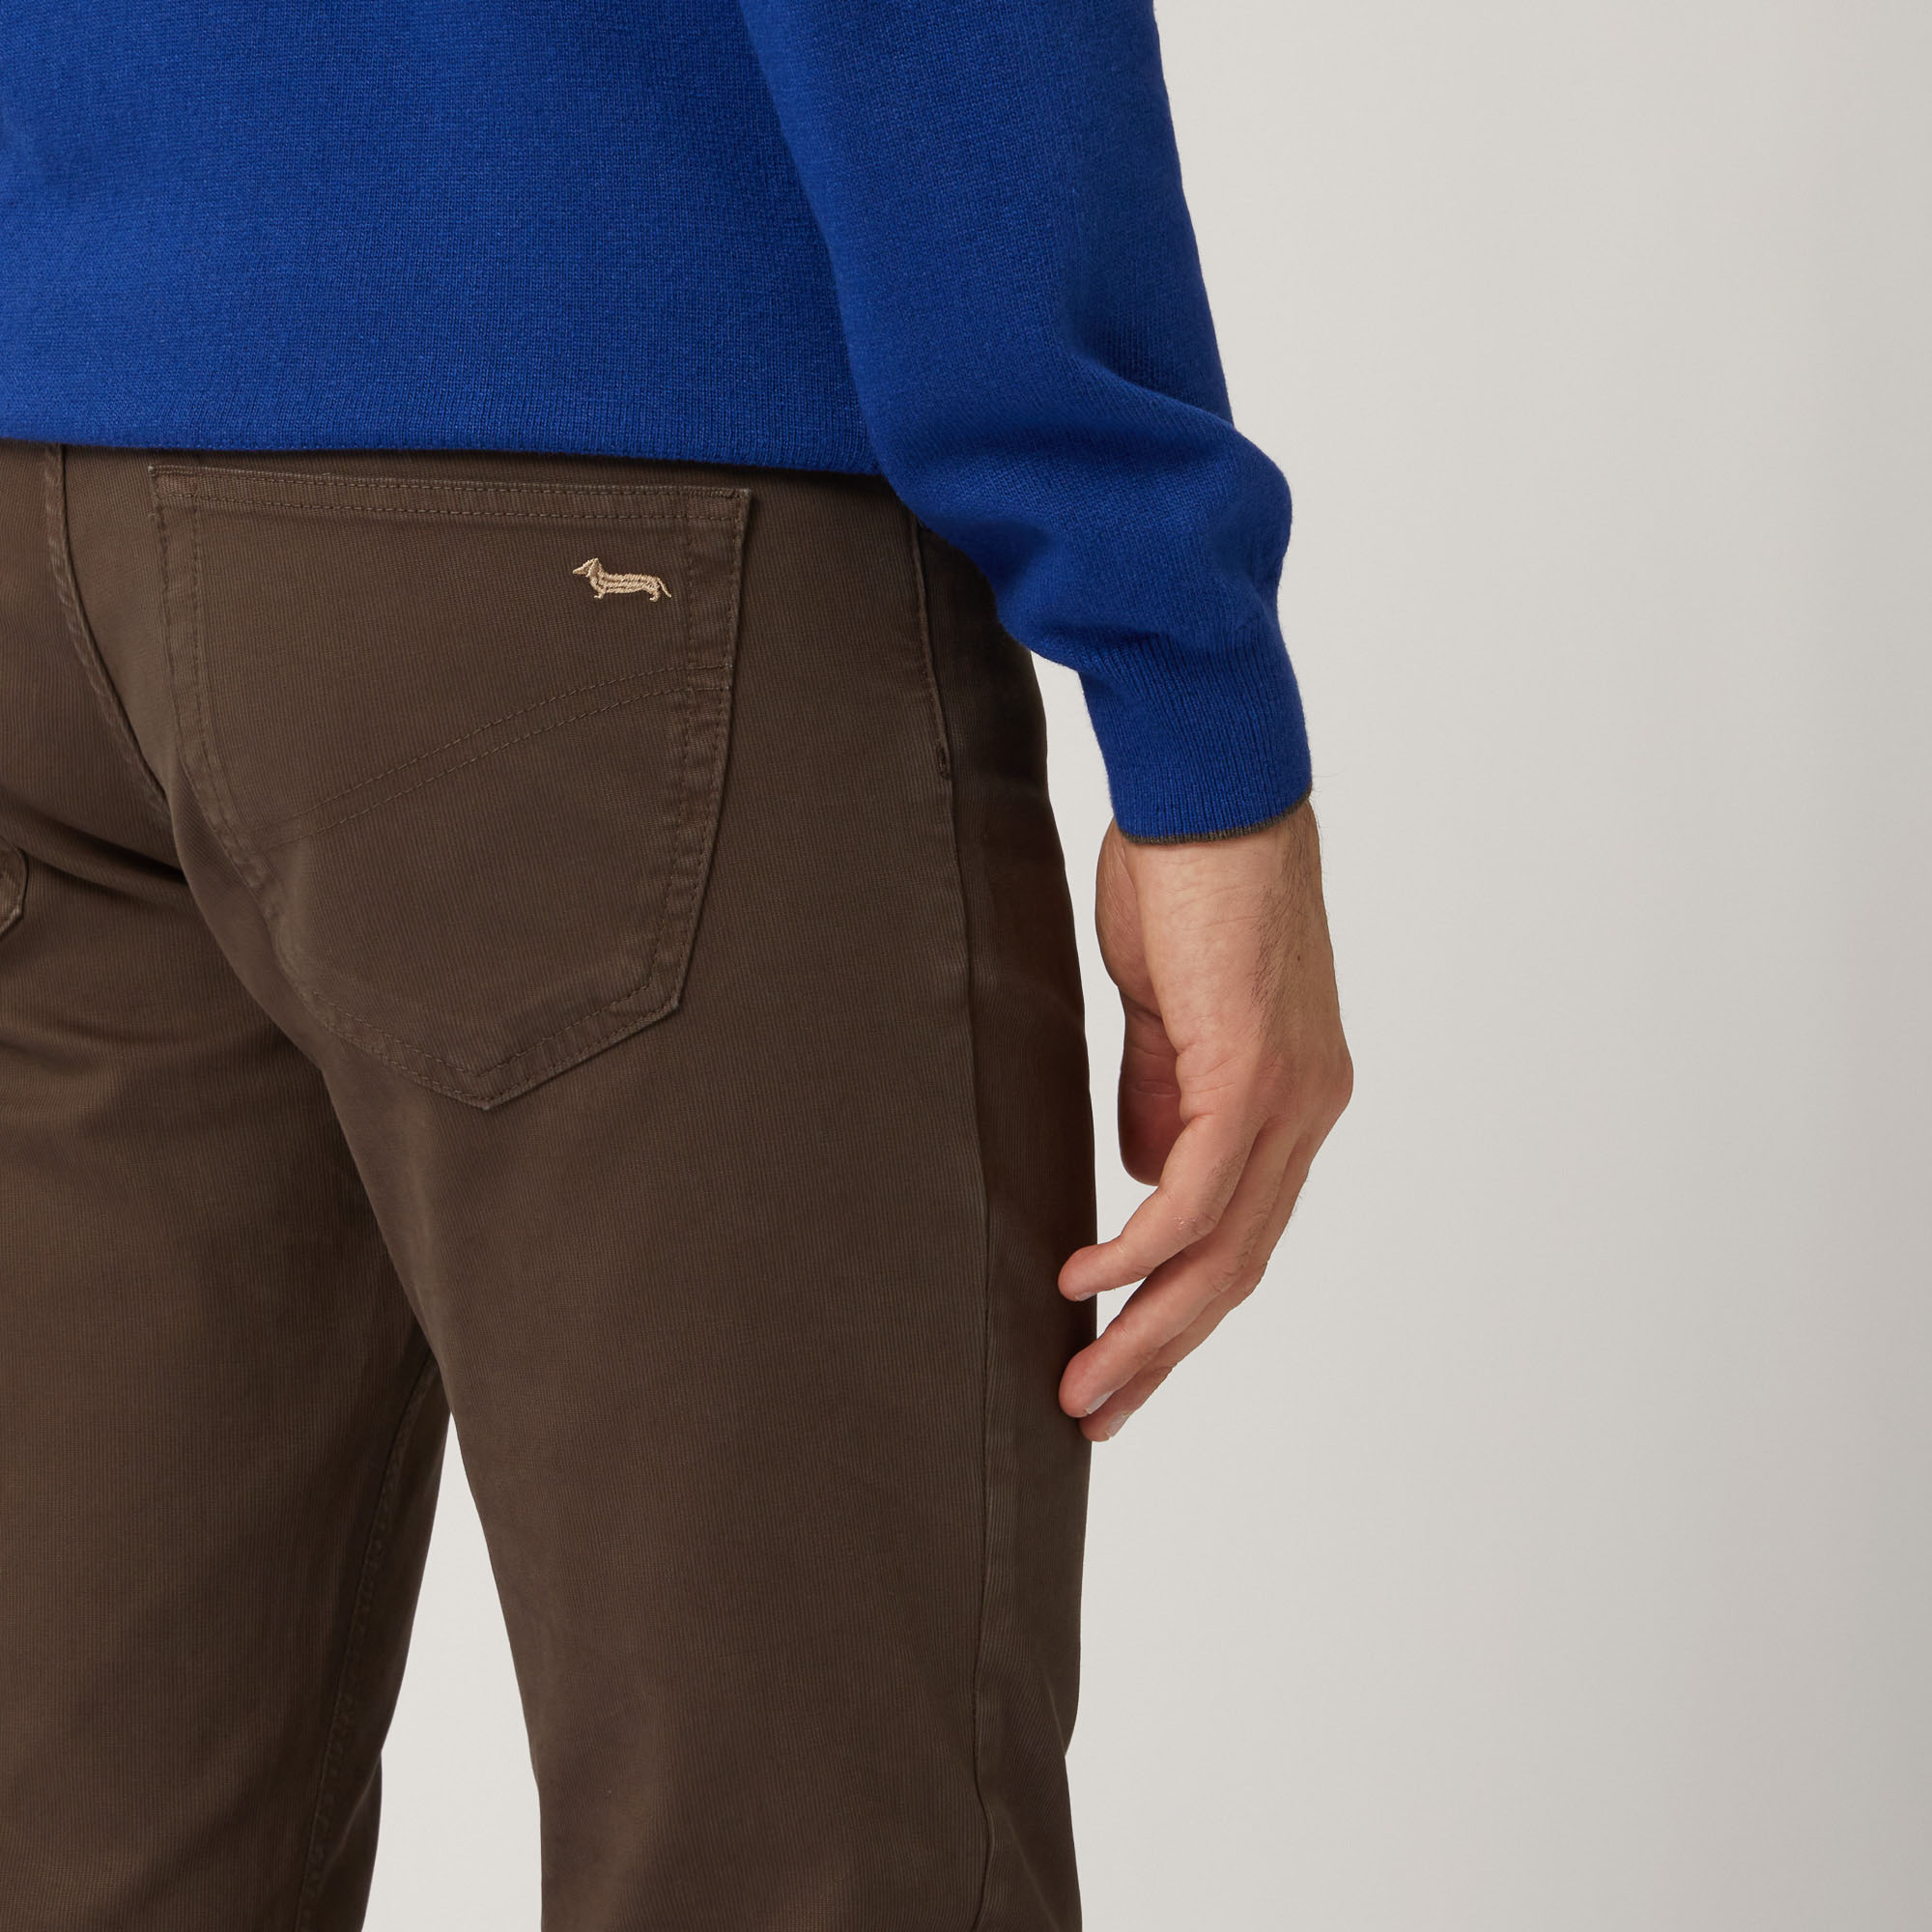 Pantalone Cinque Tasche Narrow Fit, Marrone Scuro, large